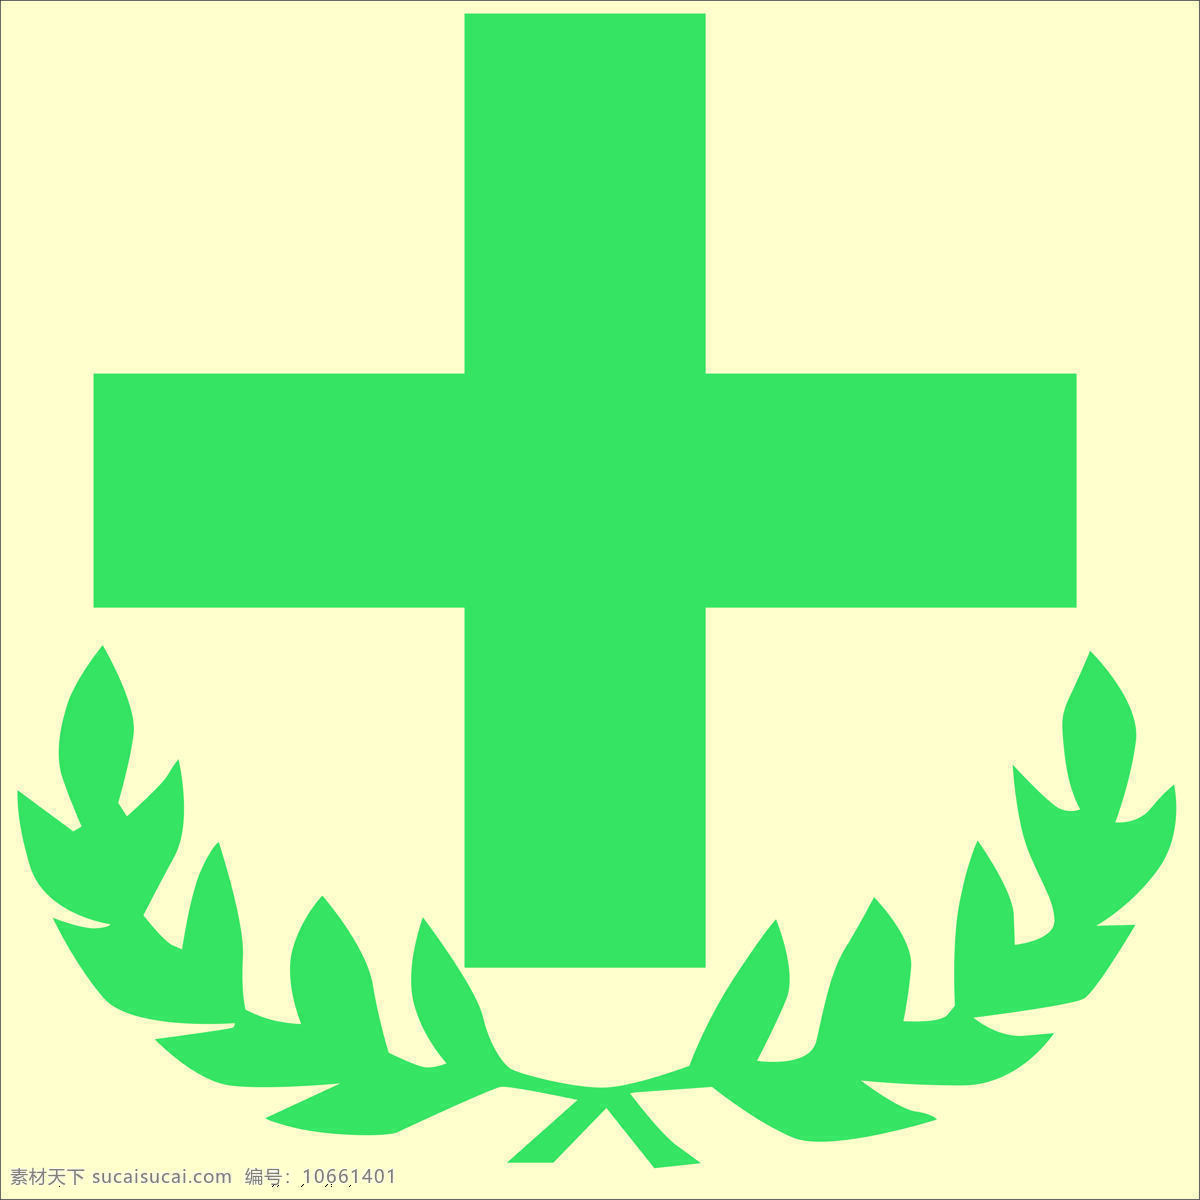 药店 药店logo 诊所logo 十字logo 绿色logo logo设计